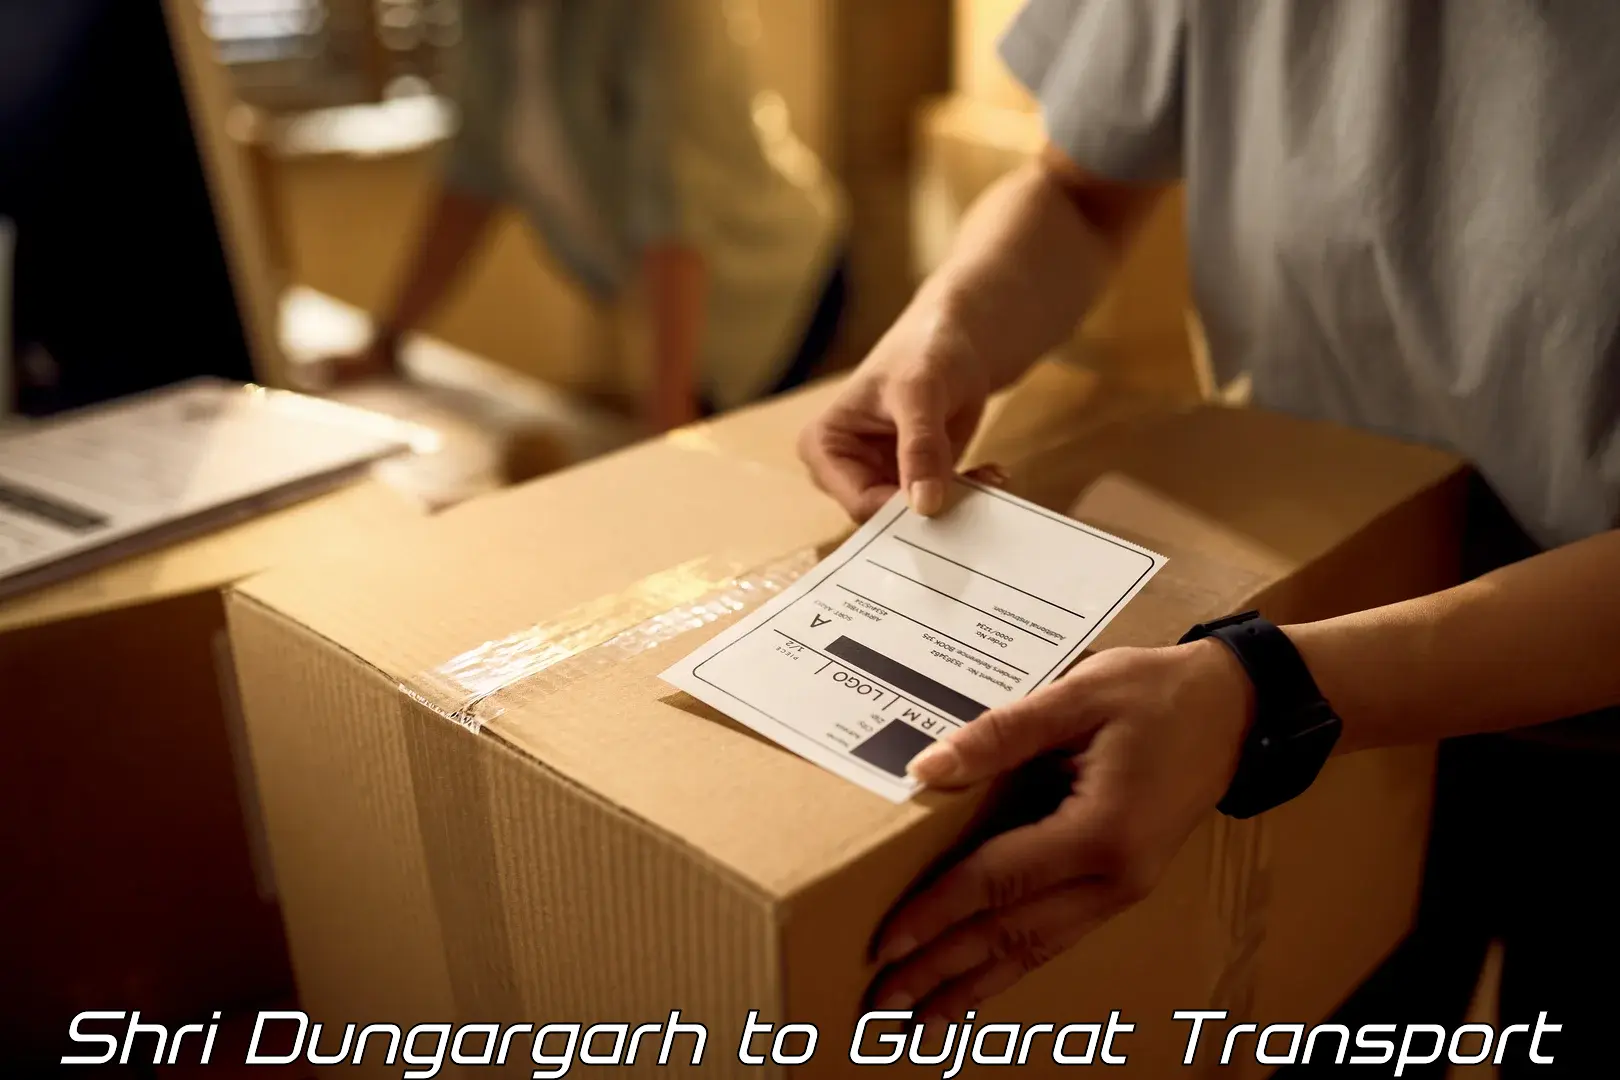 Intercity transport Shri Dungargarh to Vadodara